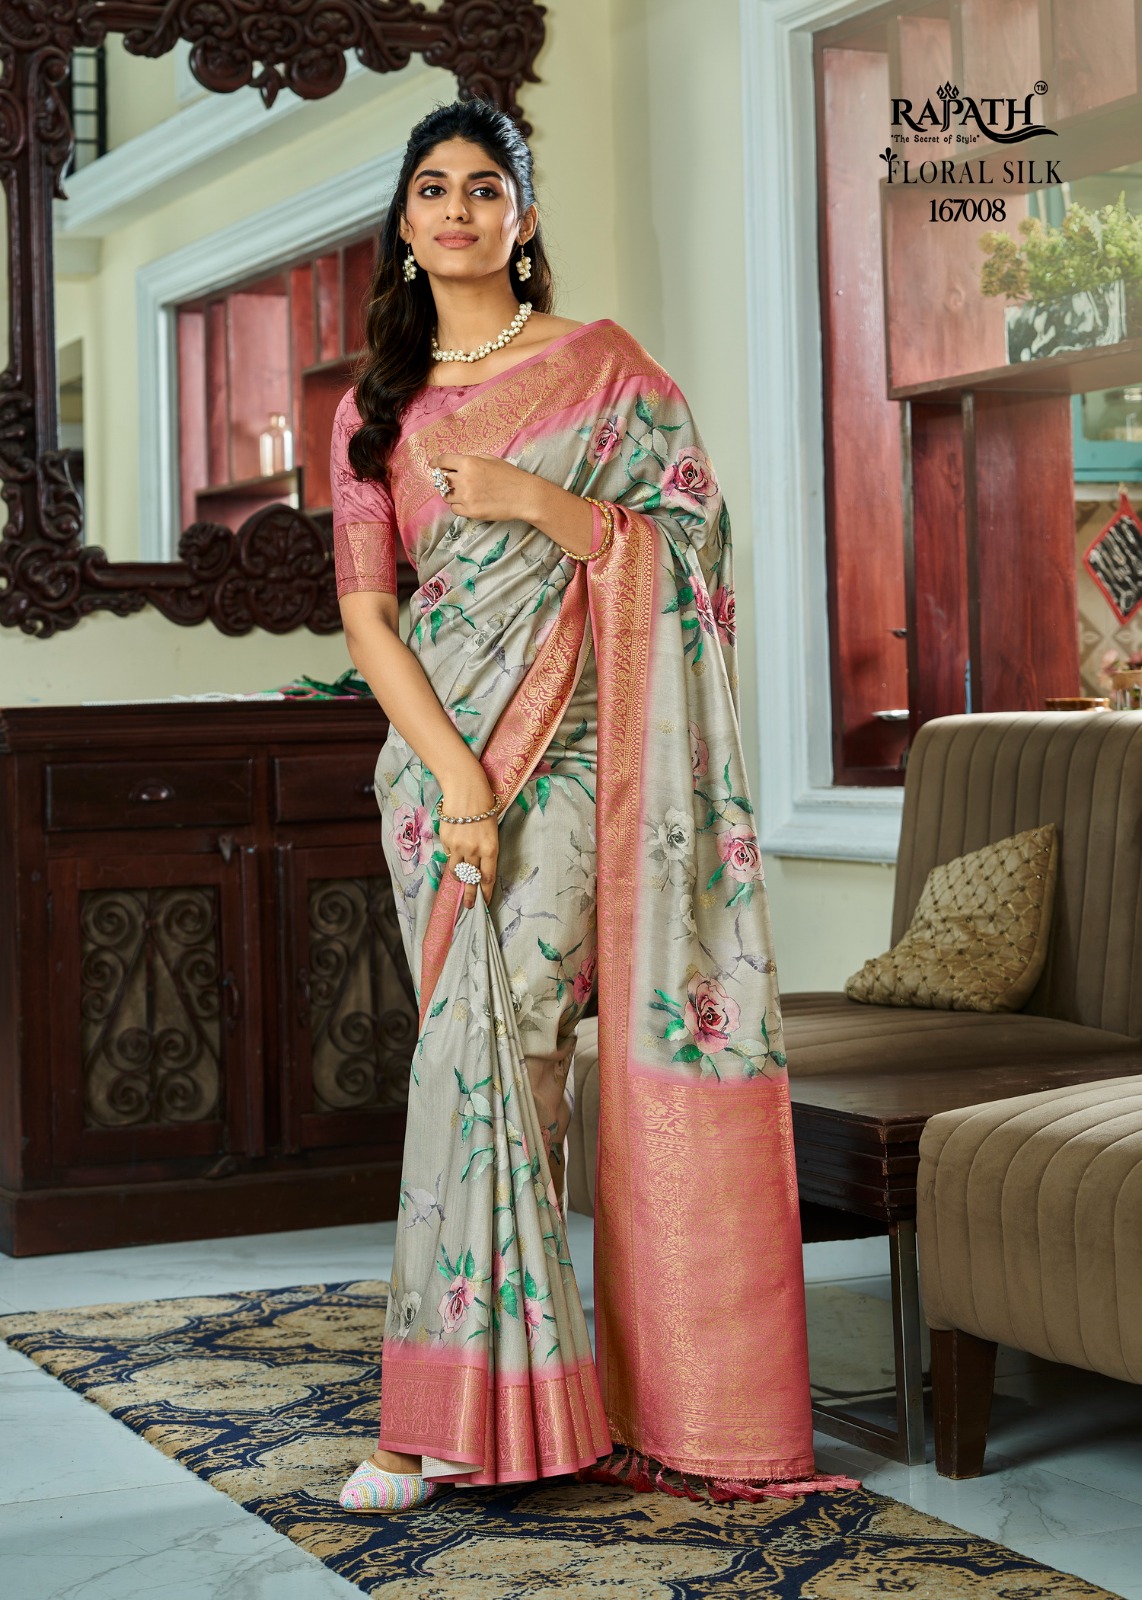 Rajpath Surmai Silk collection 2